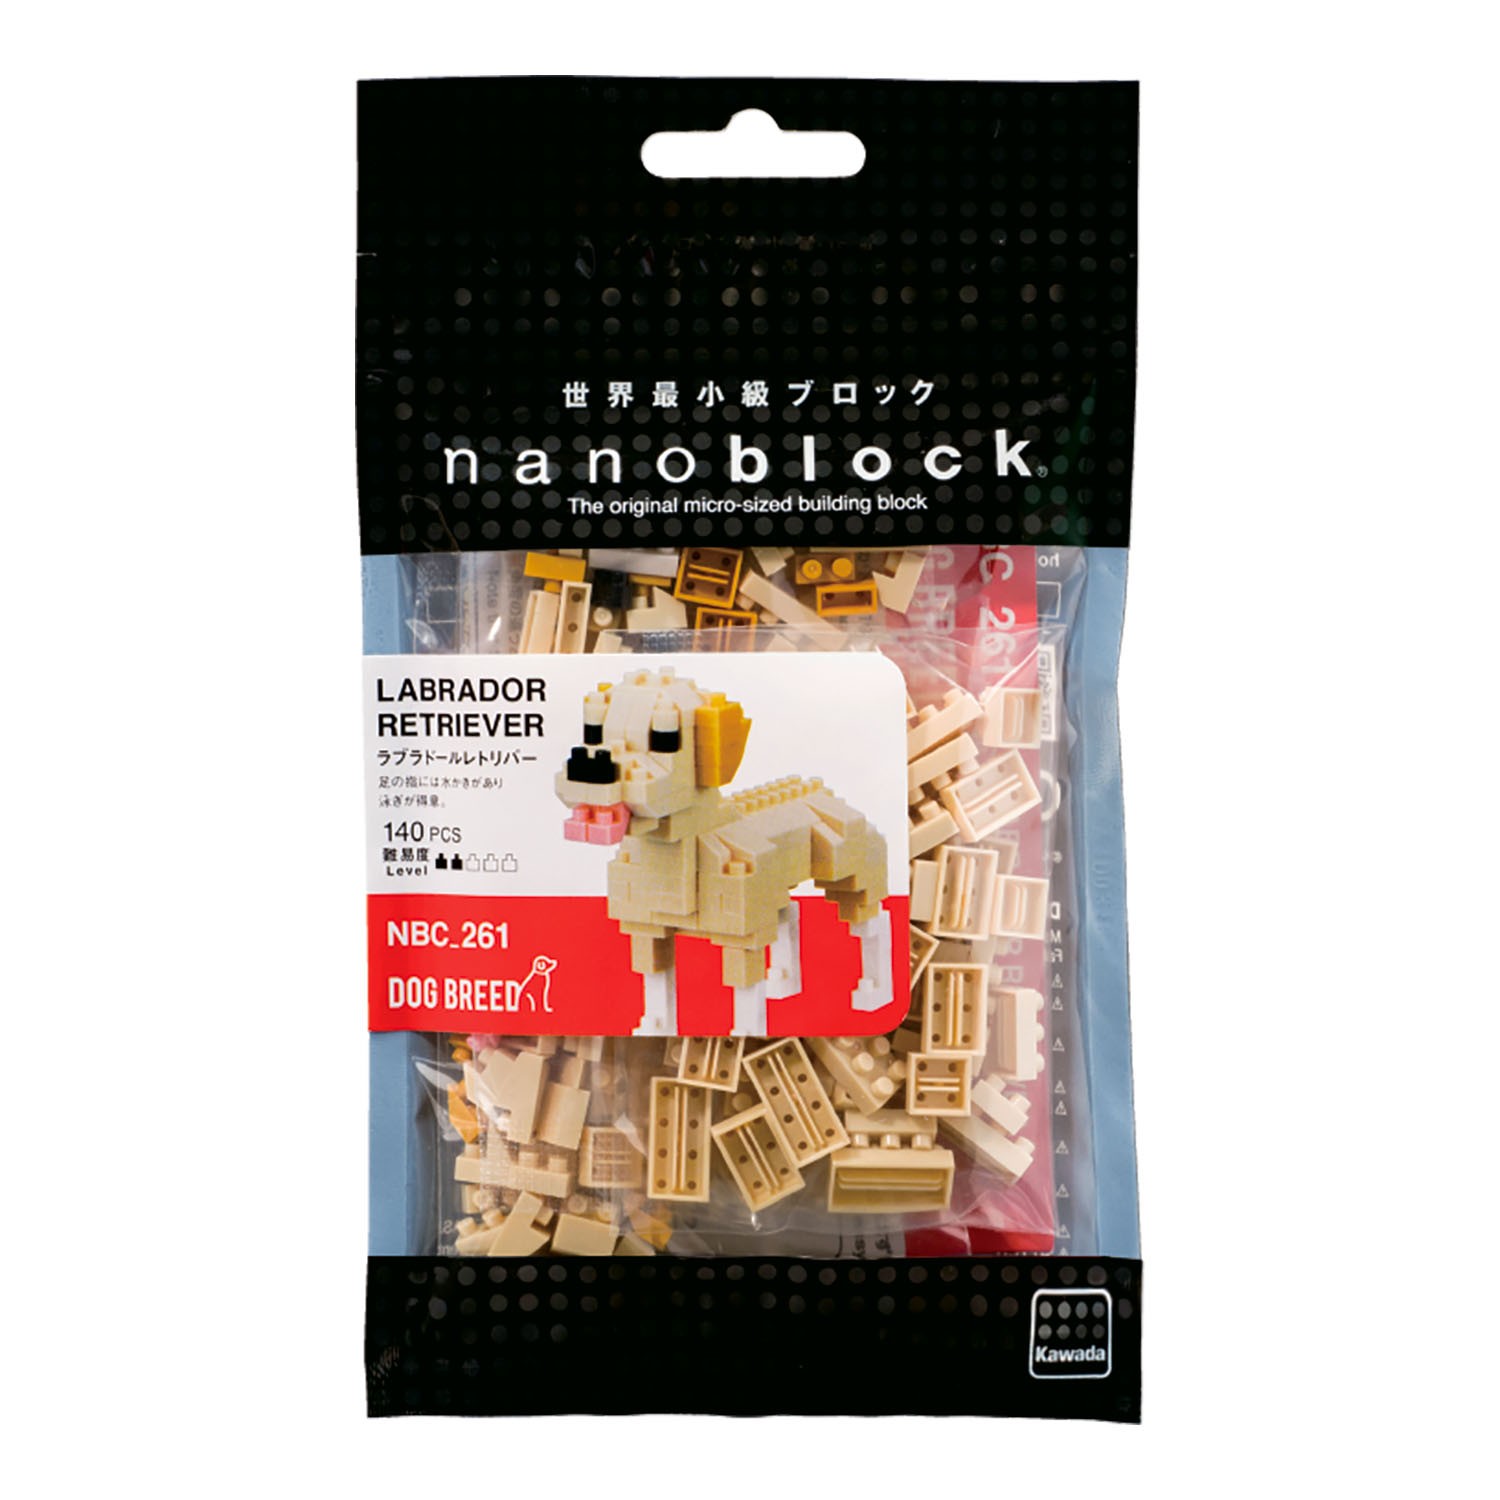 Nanoblock Labrador Retriever Dog Micro Building Block Set NBC-261 140 Pieces. 